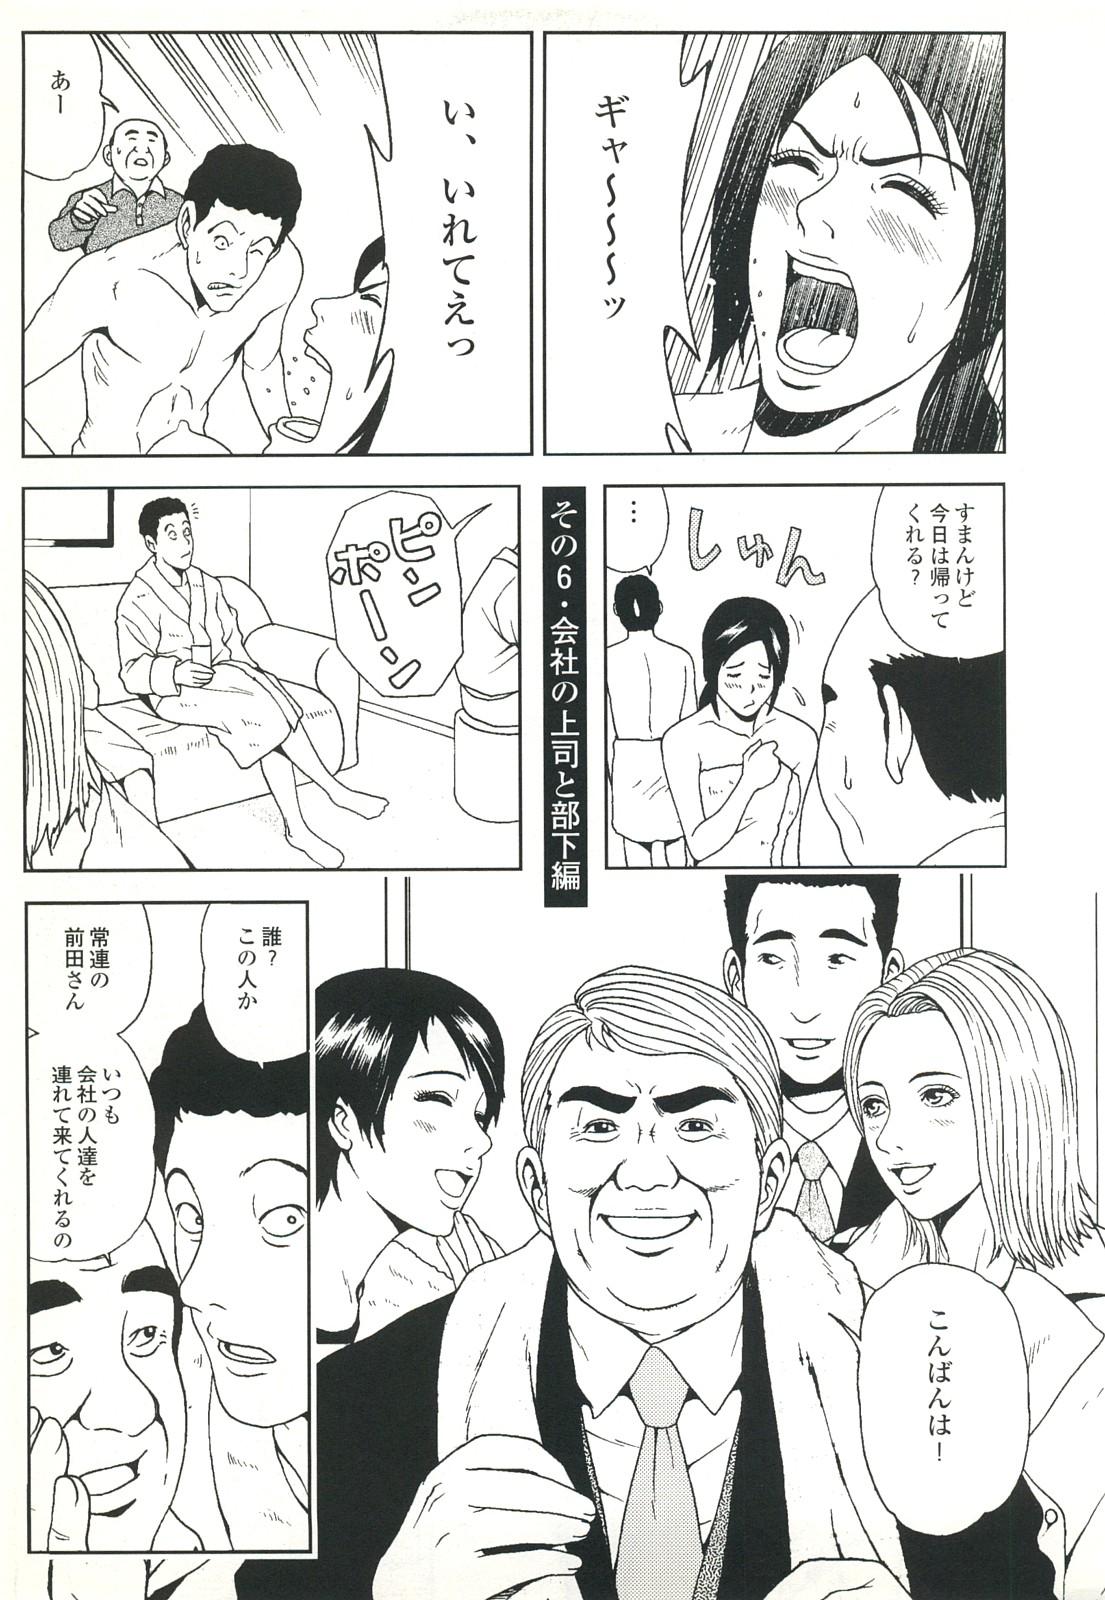 コミック裏モノJAPAN Vol.18 今井のりたつスペシャル号 68